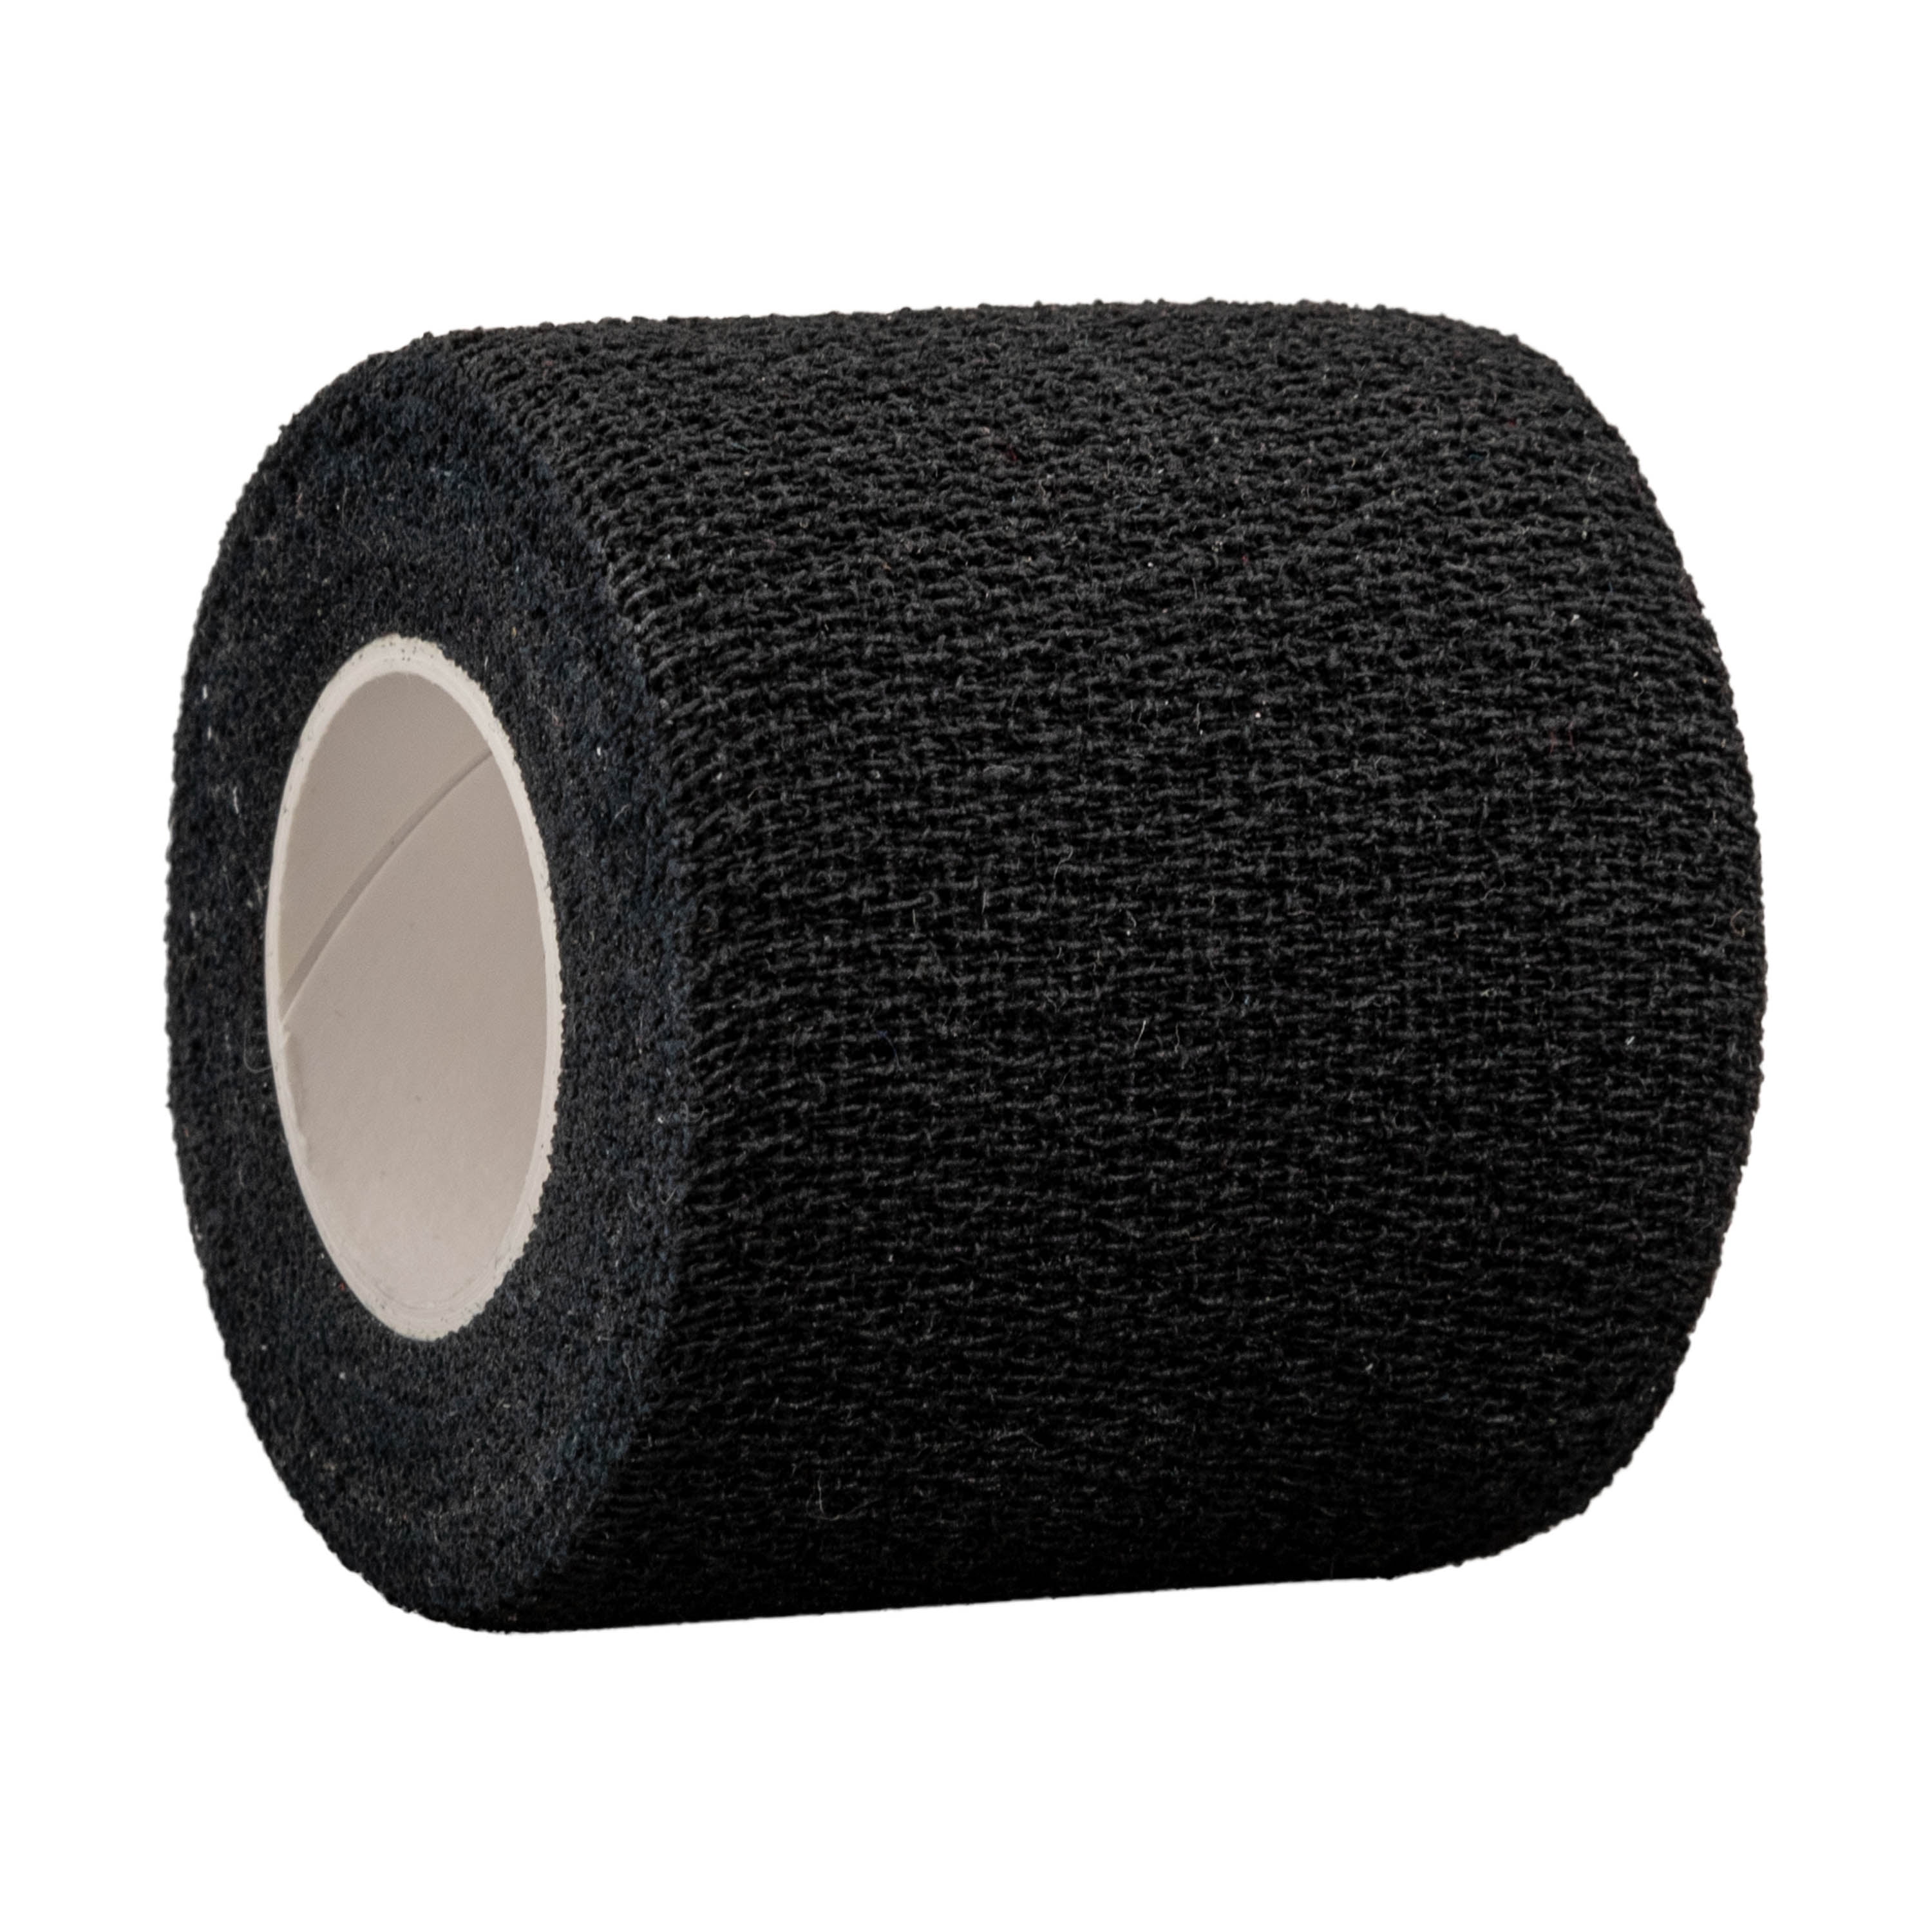 McDavid Sport Self-Stick Sports Tape, Single Roll, Black, Not Precut